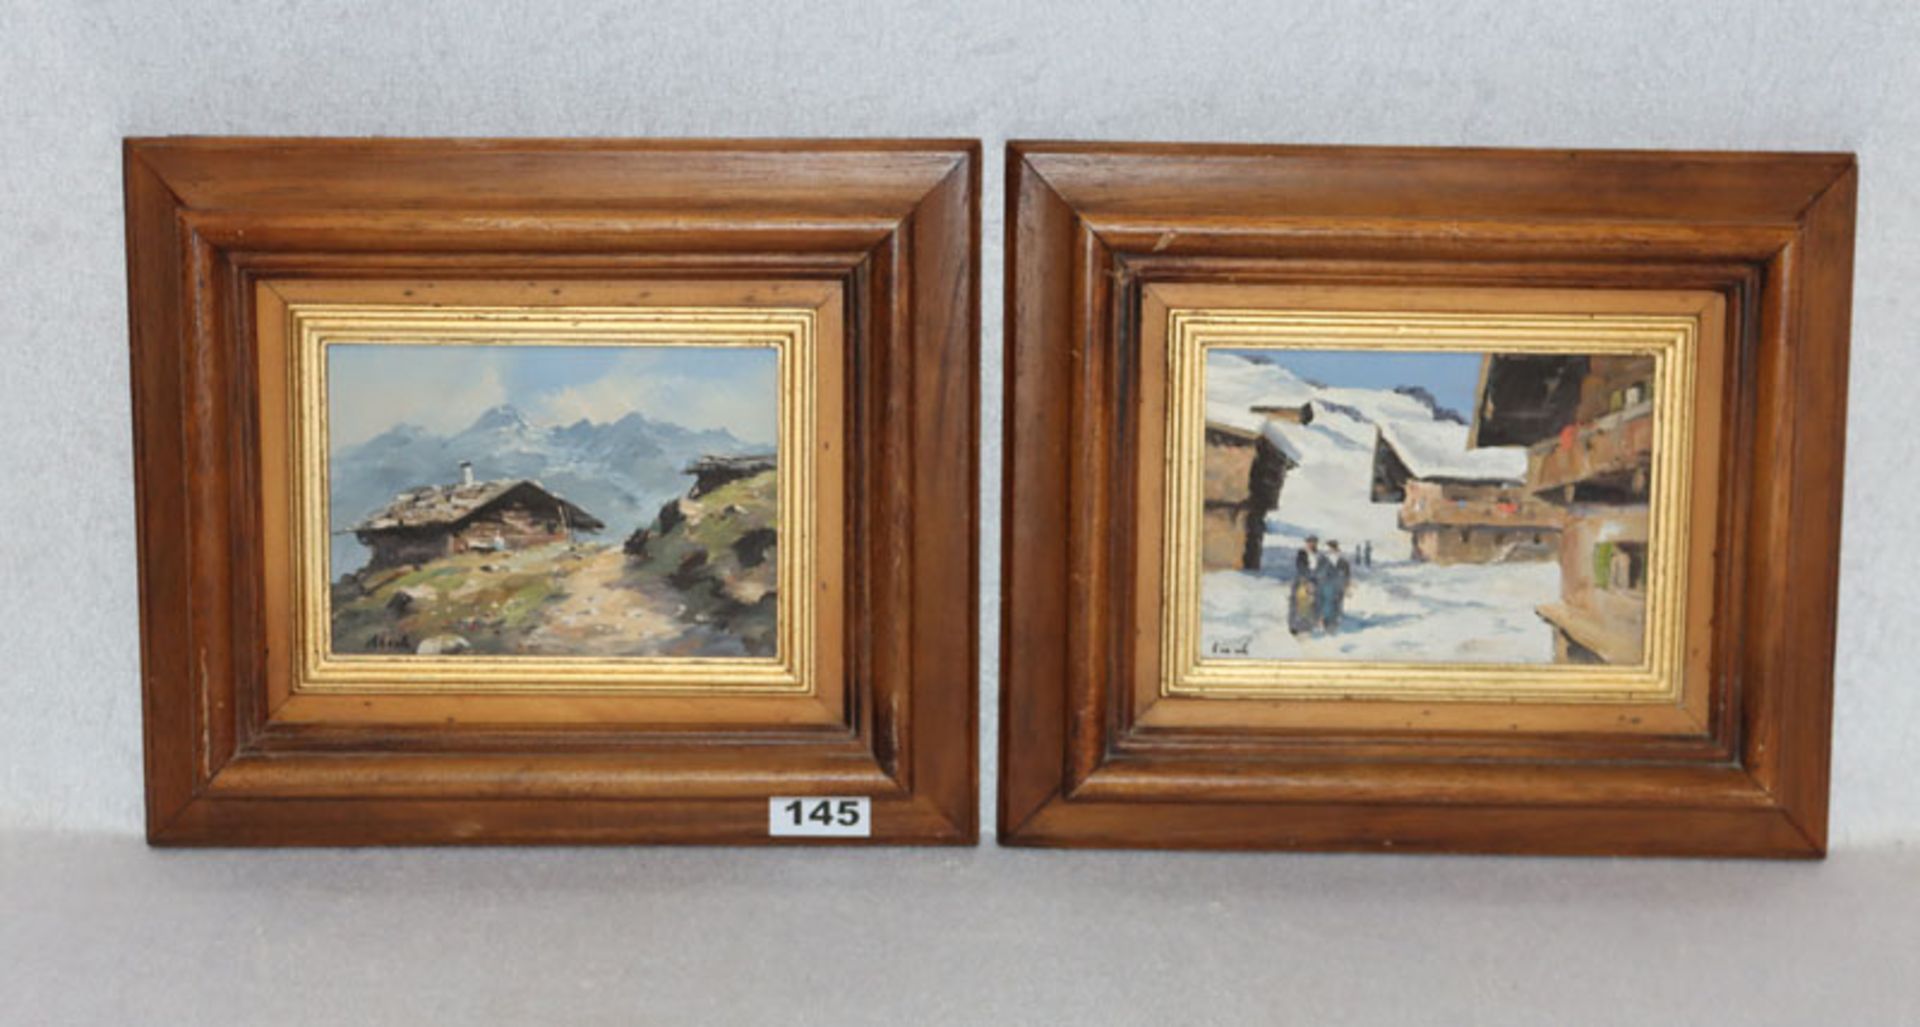 2 Gemälde ÖL/Malkarton 'Stadl im Hochgebirge' und 'Dorf-Szenerie im Winter', Kopie nach Walde, beide